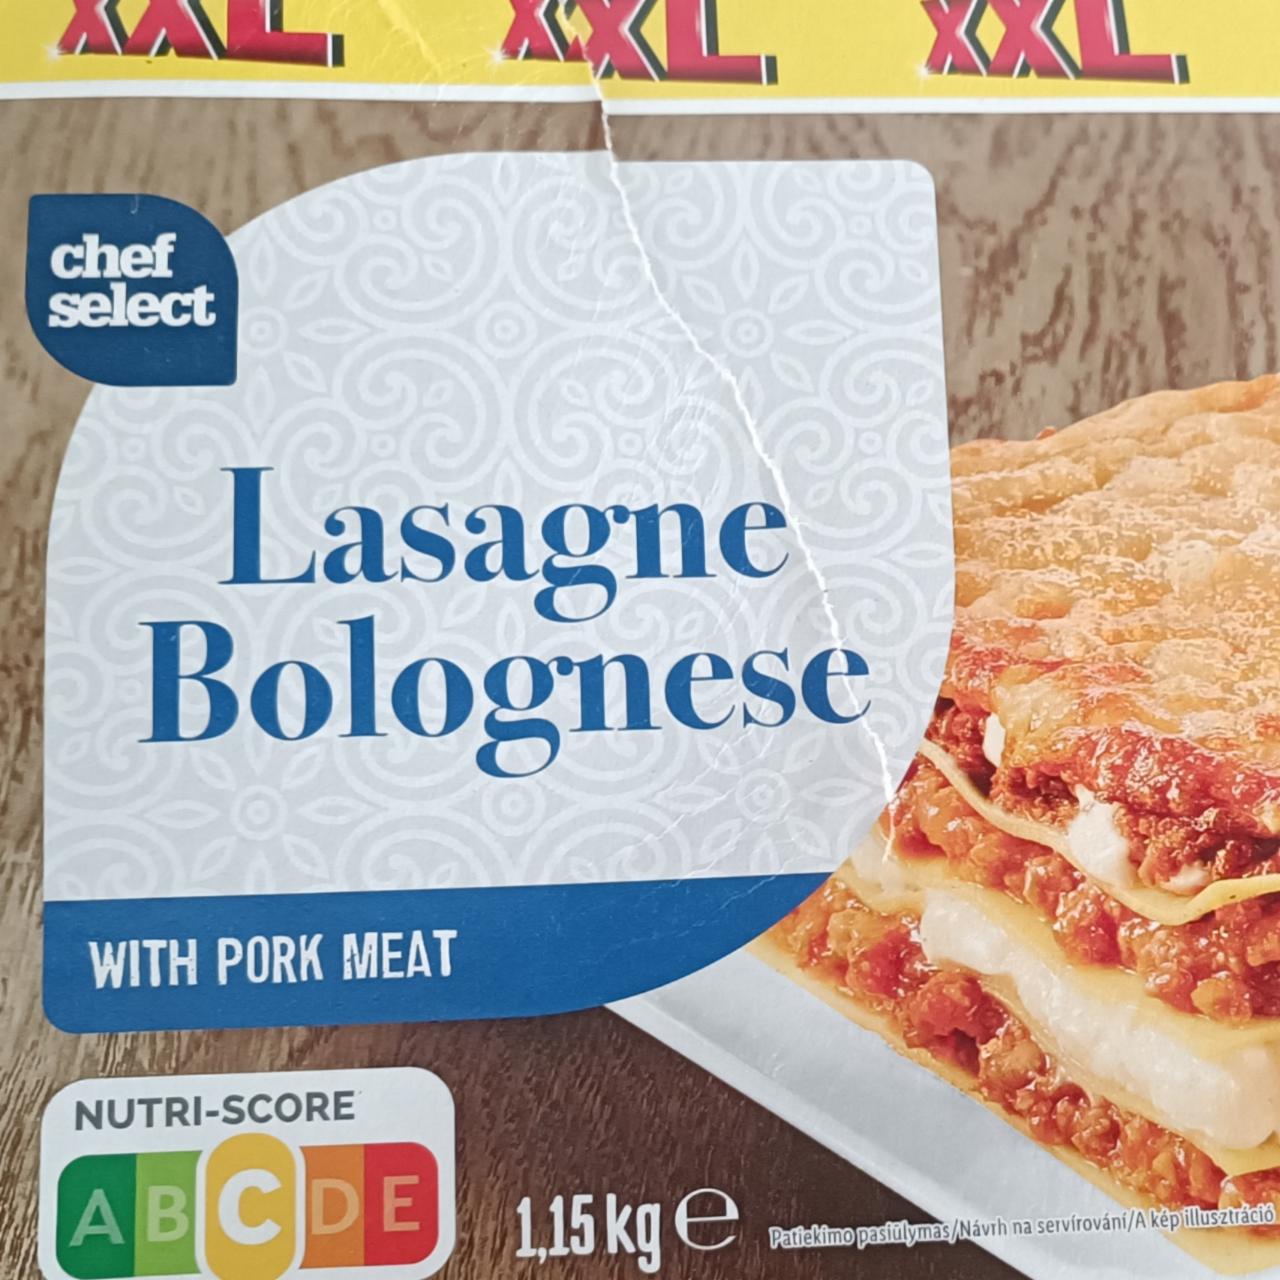 kalorie, Lasagne Bolognese - with Select a Chef nutriční hodnoty kJ pork